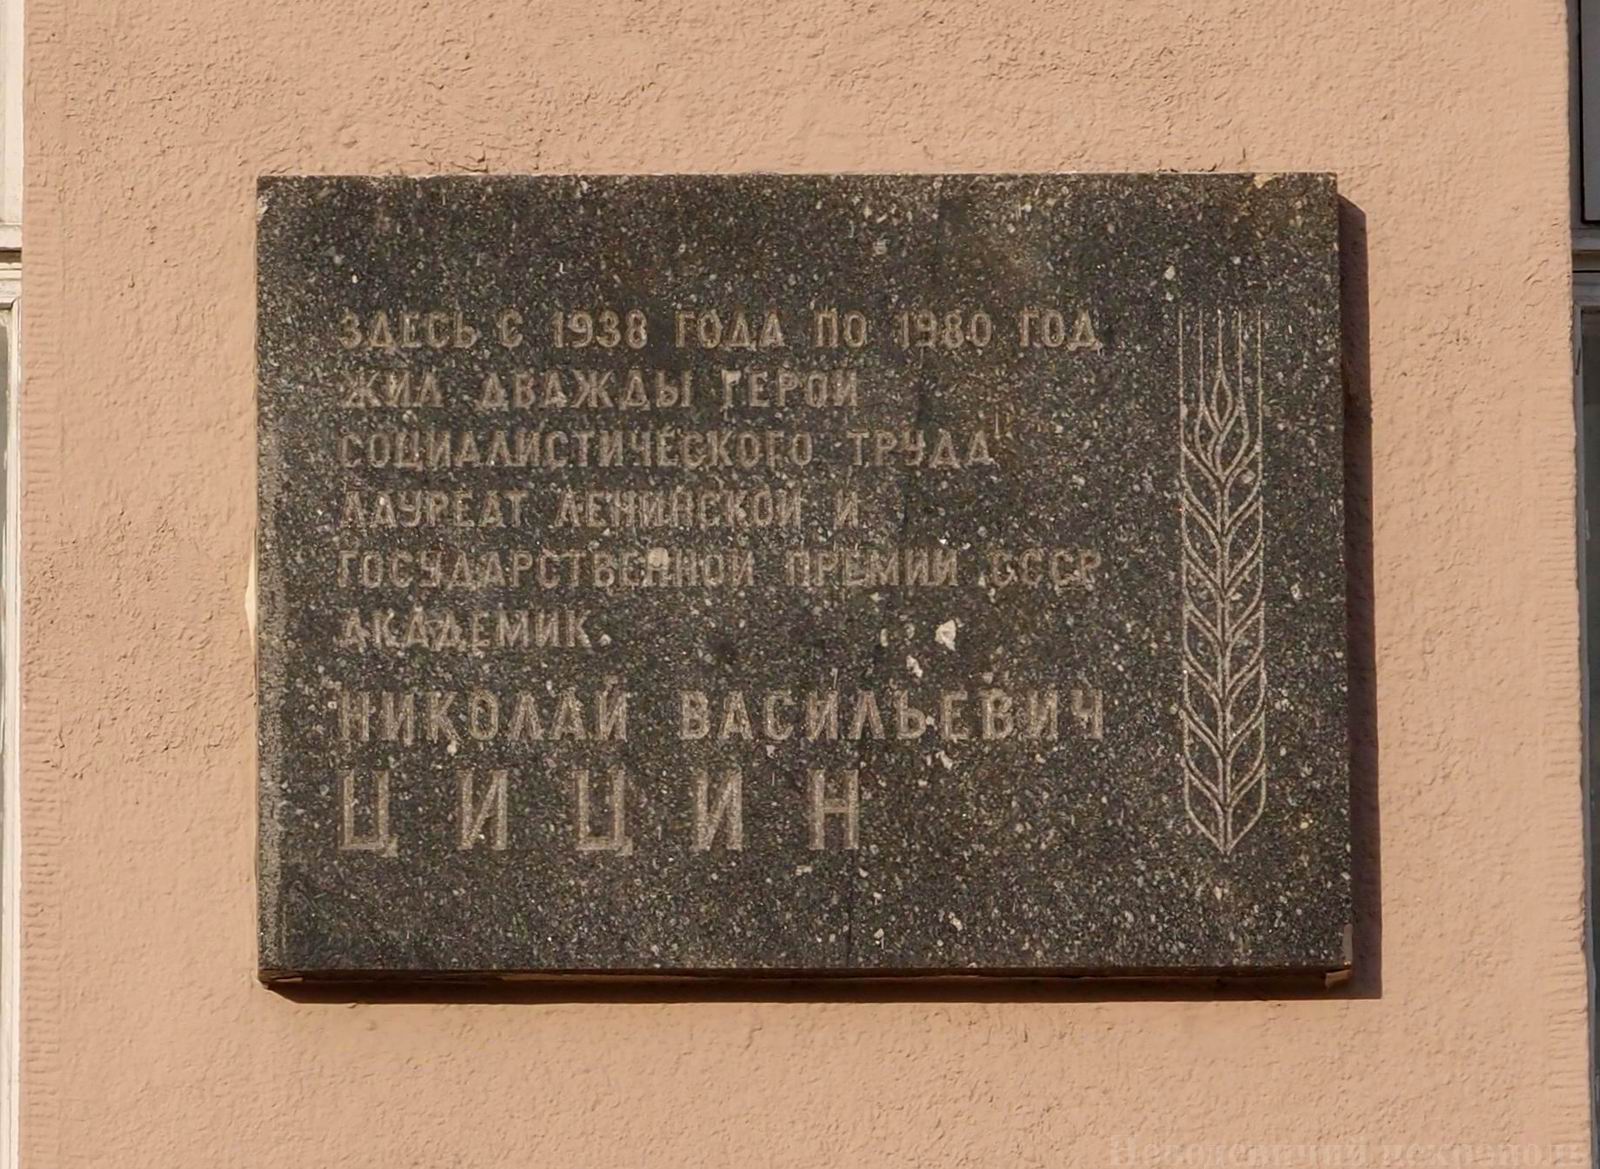 Мемориальная доска Цицину Н.В. (1898-1980), ск. Б.А.Дубрович, арх. К.И.Мурашов, на улице Серафимовича, дом 2, открыта 14.11.1986.